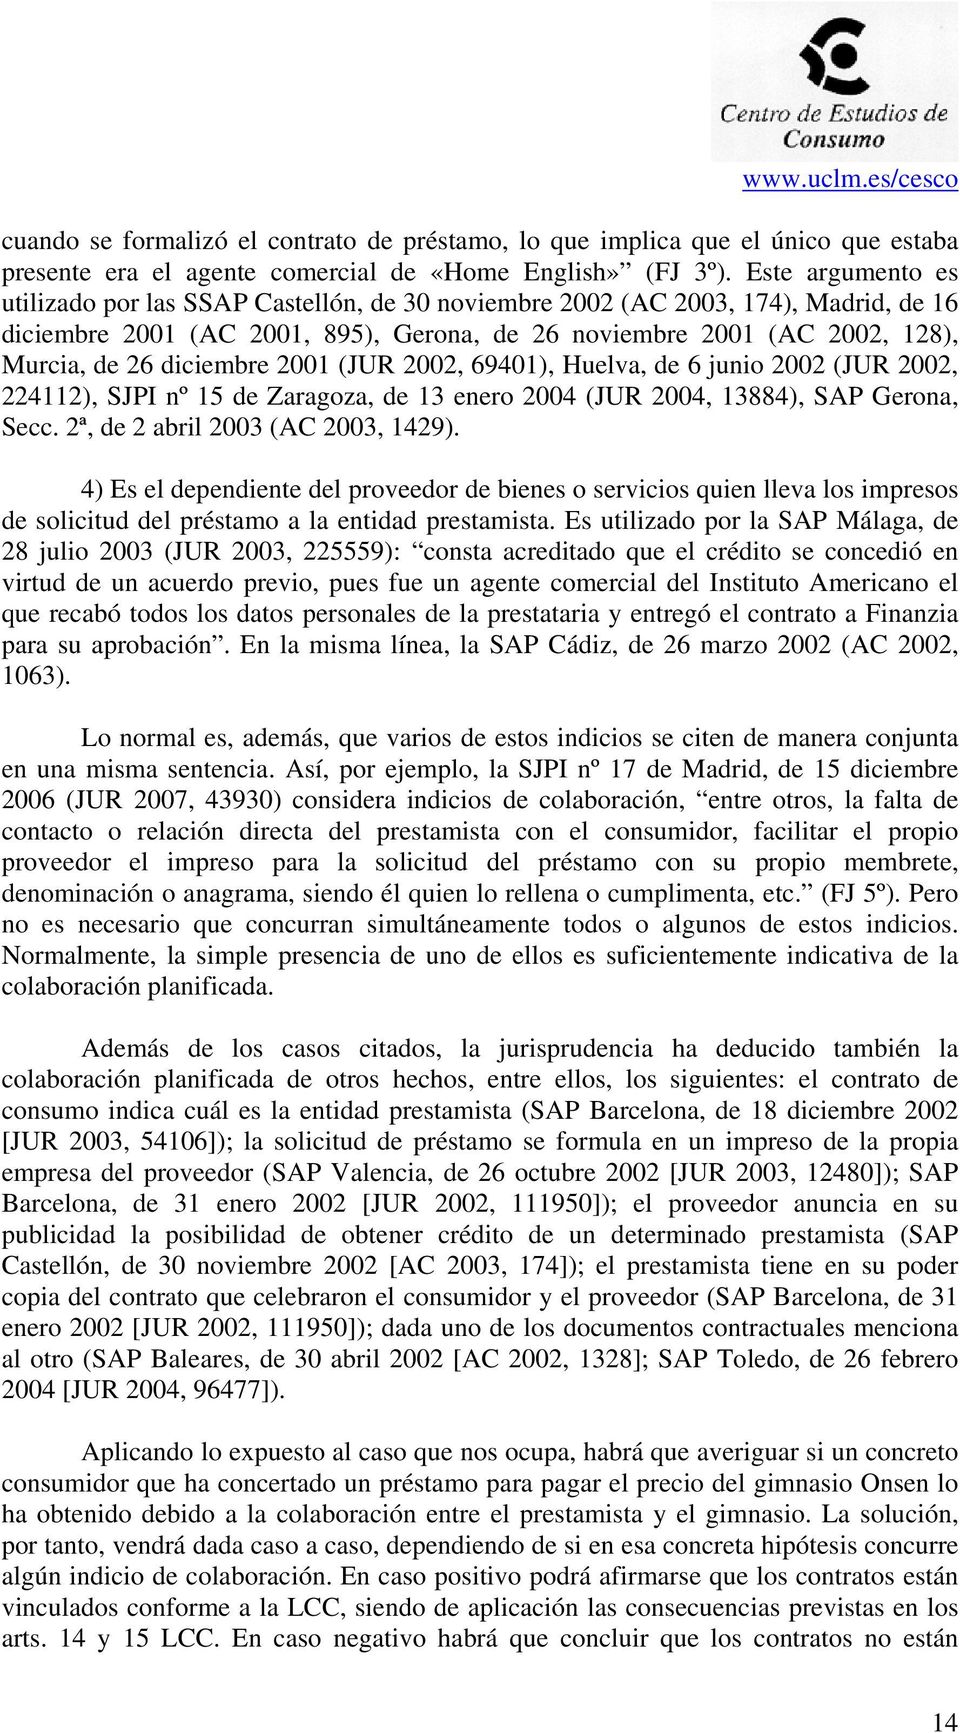 diciembre 2001 (JUR 2002, 69401), Huelva, de 6 junio 2002 (JUR 2002, 224112), SJPI nº 15 de Zaragoza, de 13 enero 2004 (JUR 2004, 13884), SAP Gerona, Secc. 2ª, de 2 abril 2003 (AC 2003, 1429).